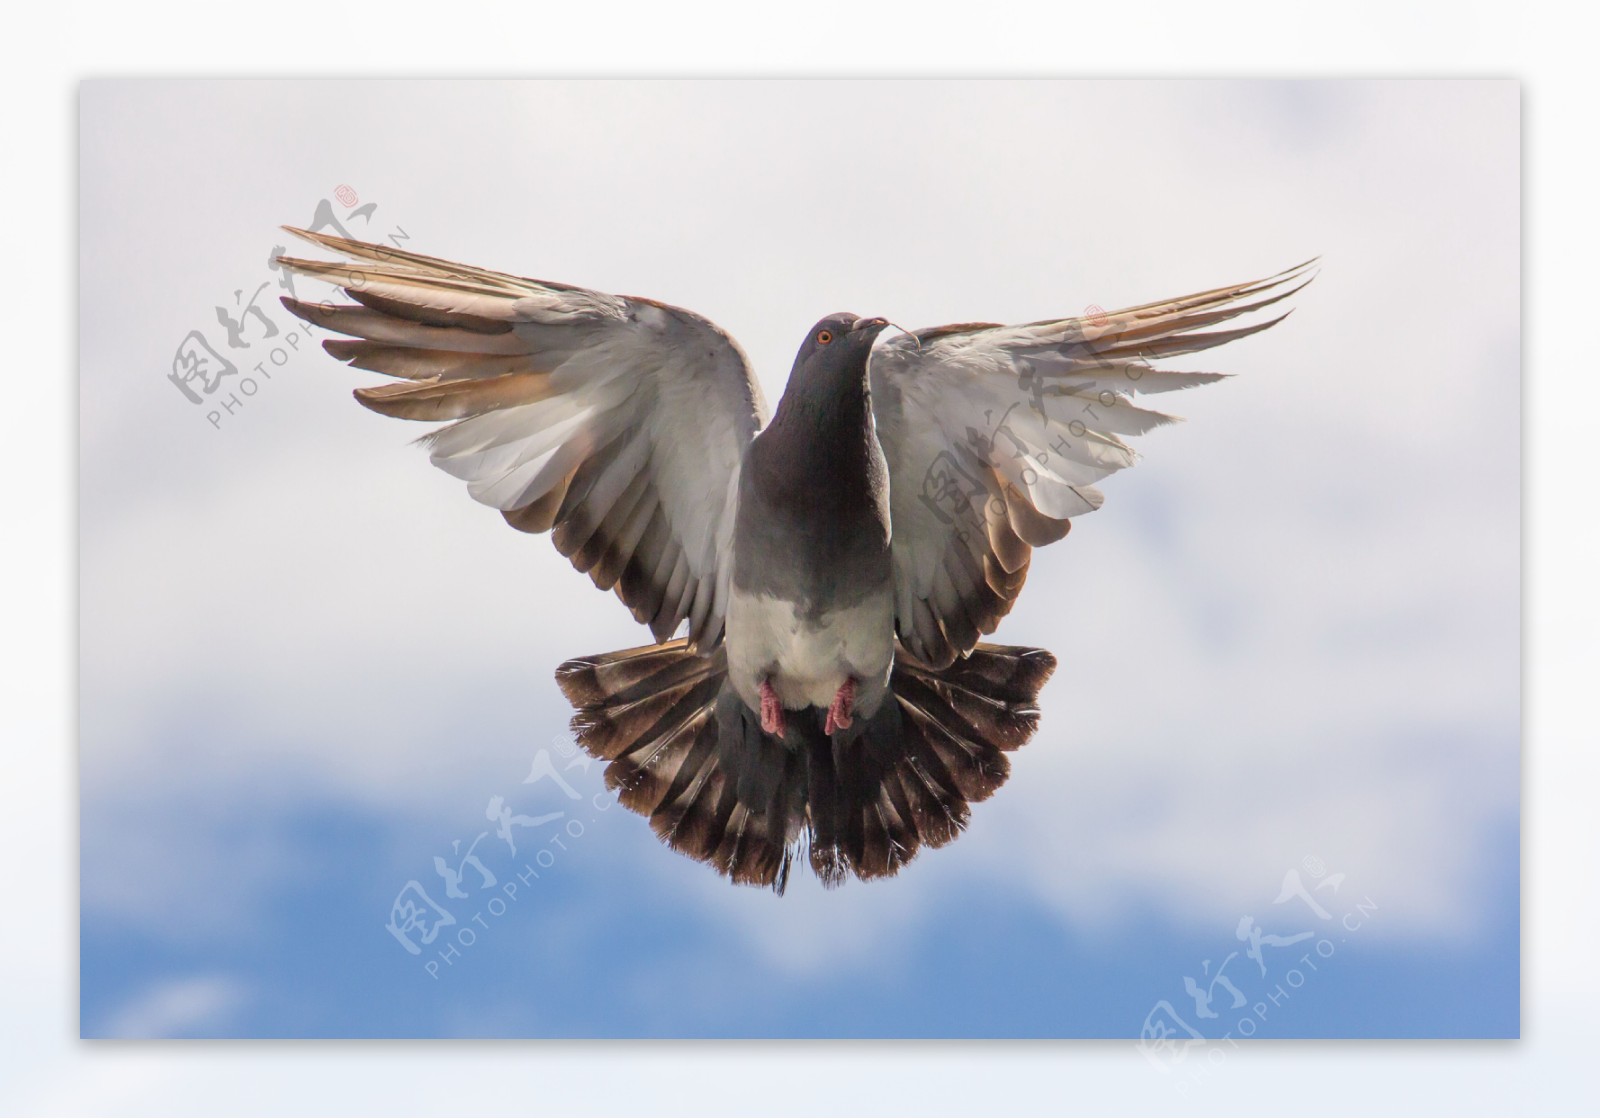 展翅飞翔的鸽子图片